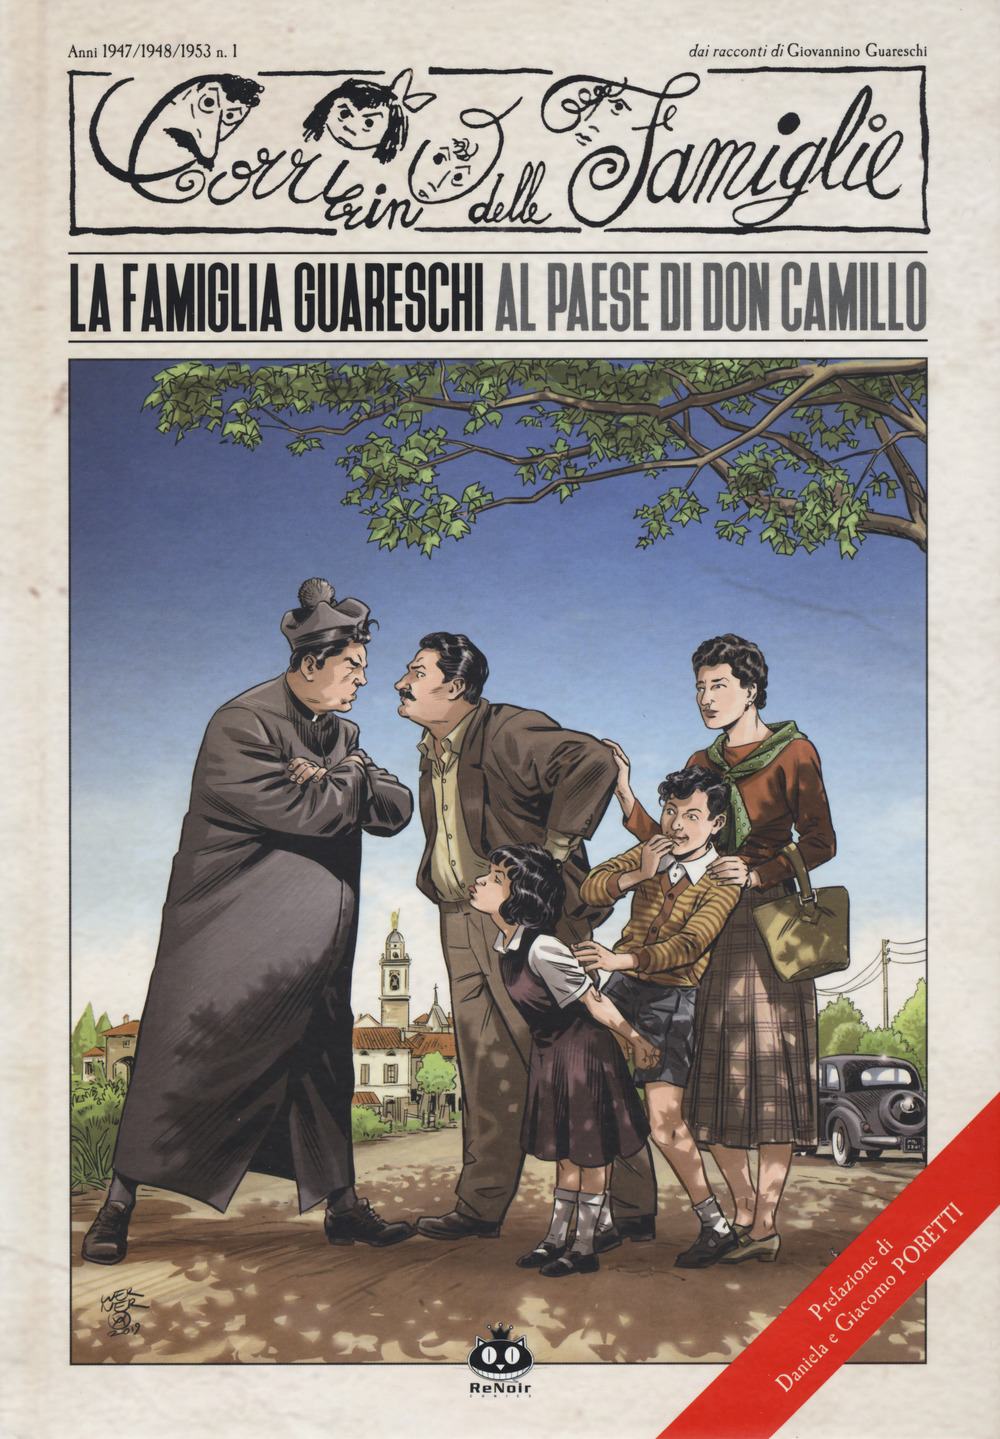 Il Corrierino delle famiglie dai racconti di Giovannino Guareschi. Vol. 1: La famiglia Guareschi al paese di don Camillo